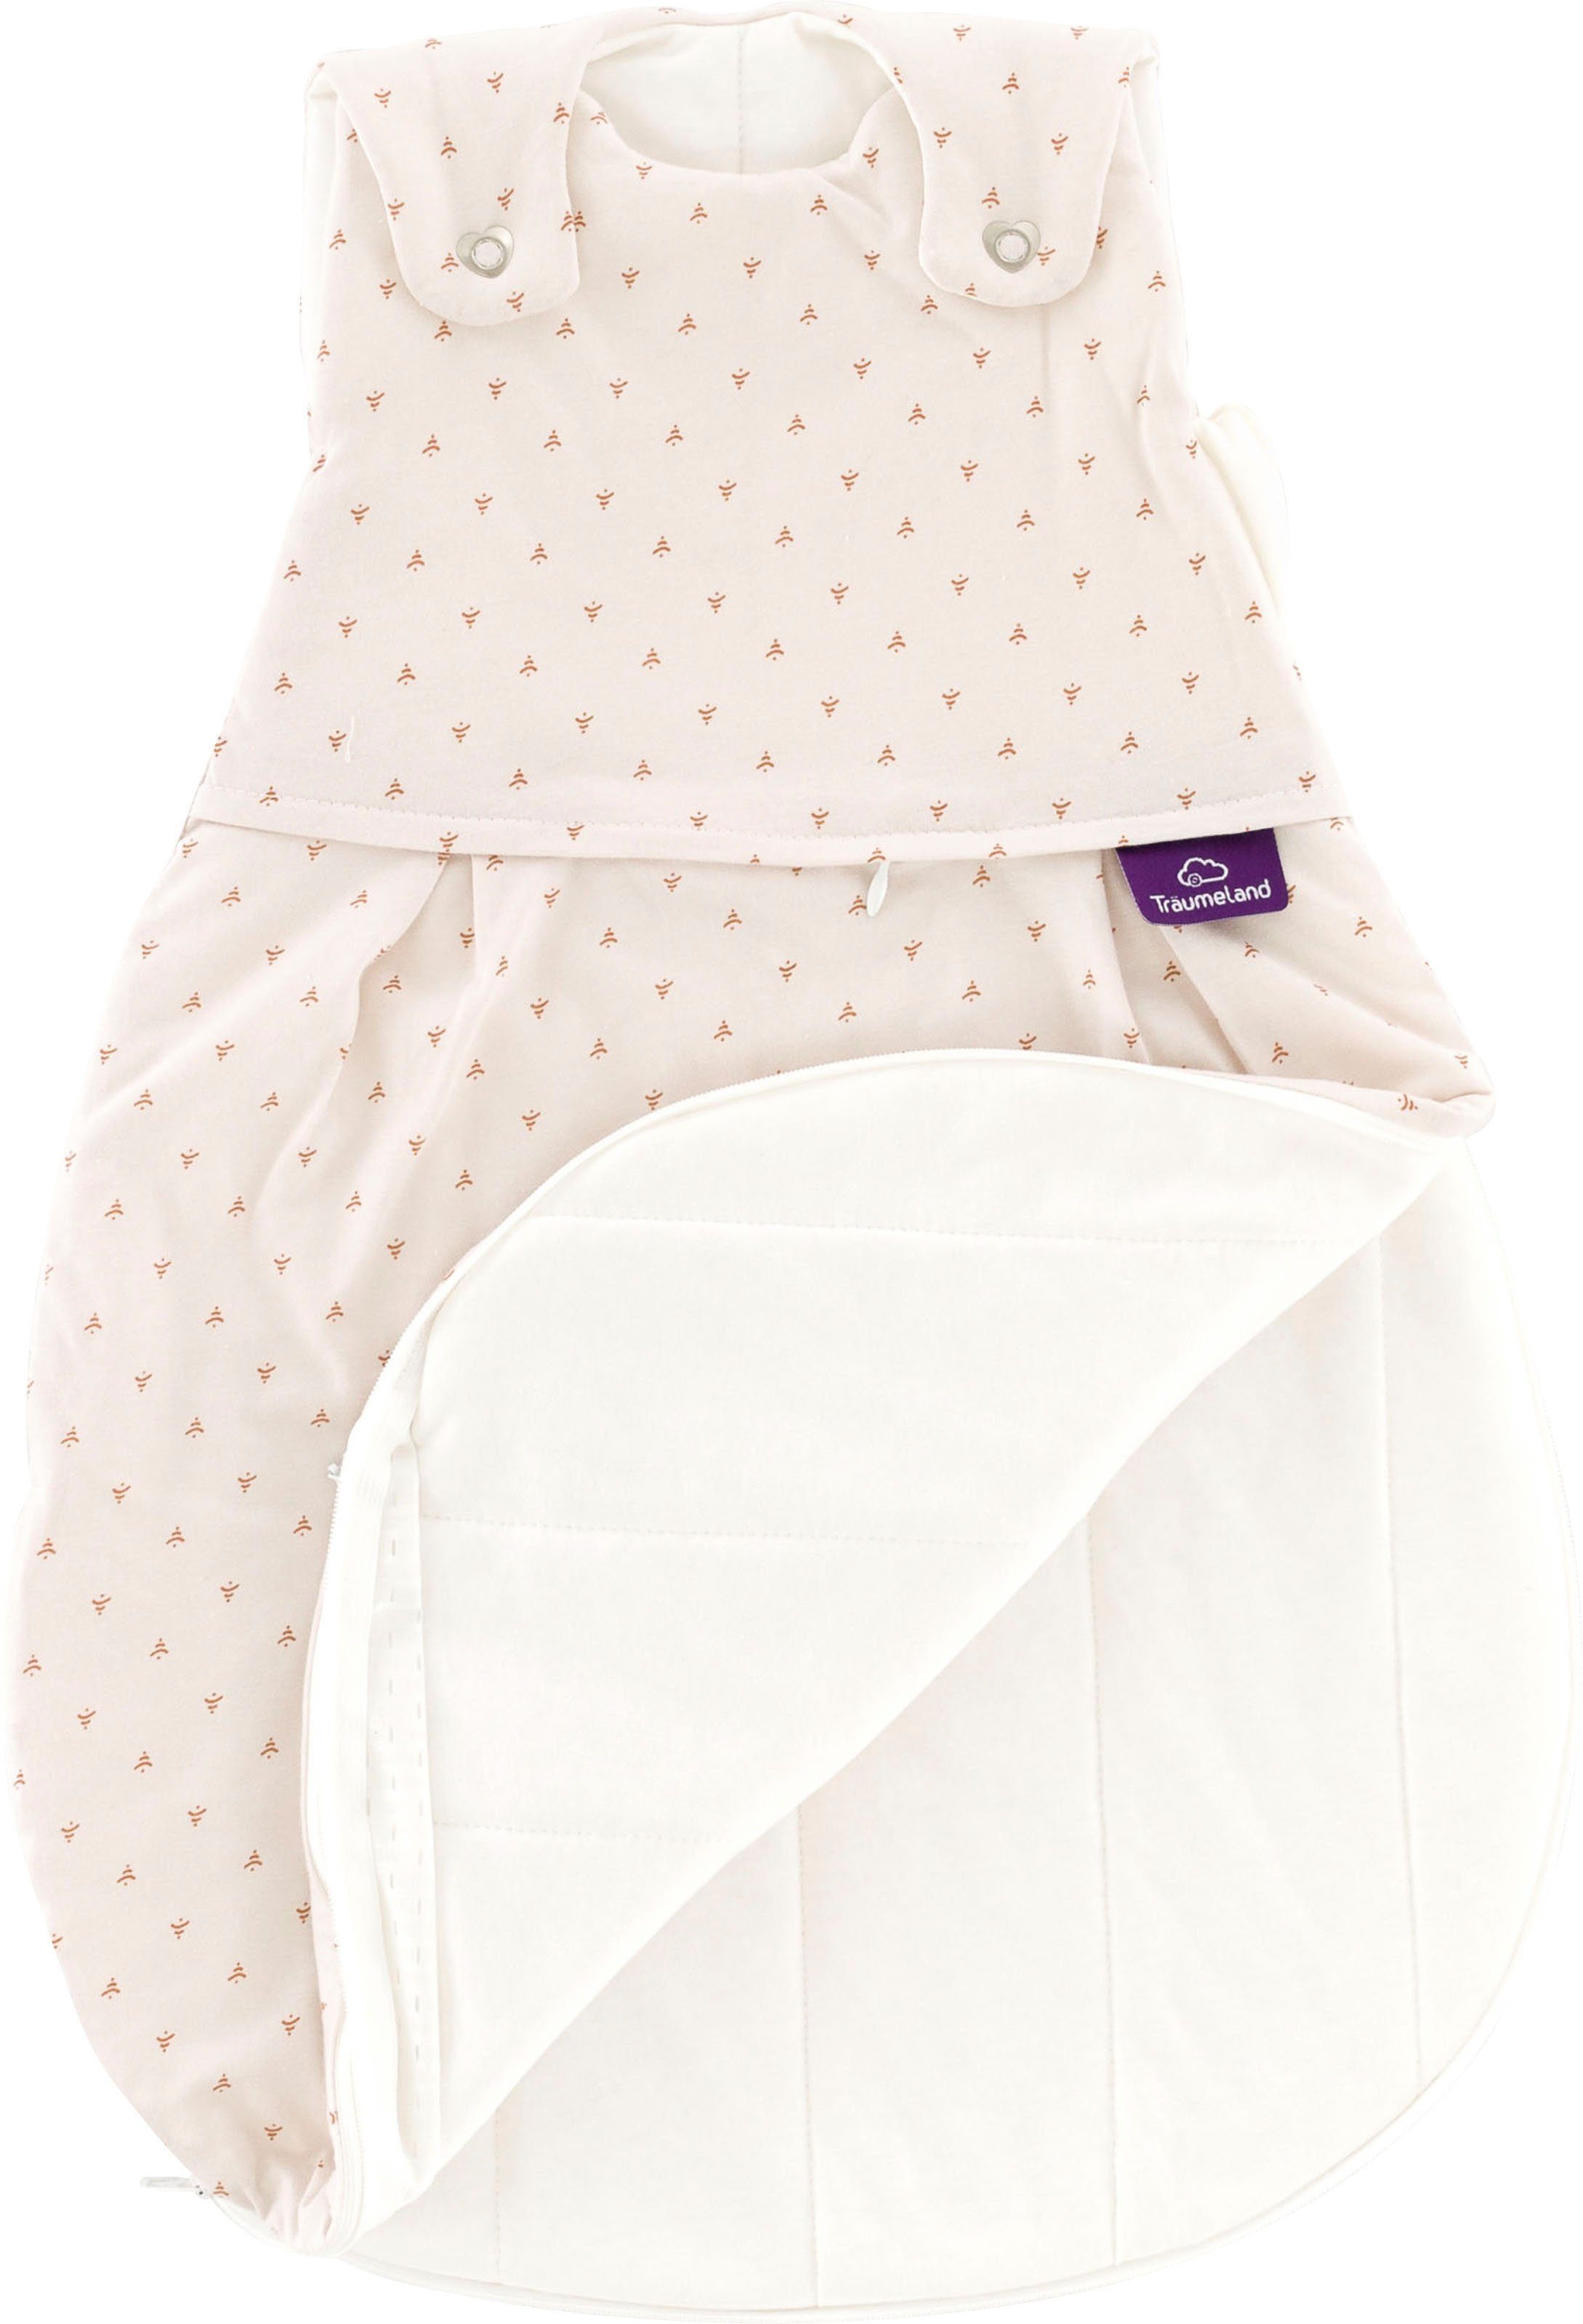 Träumeland Babyschlafsack Außenschlafsack LIEBMICH cm Größen beige den 50/56-80/83 in Twister